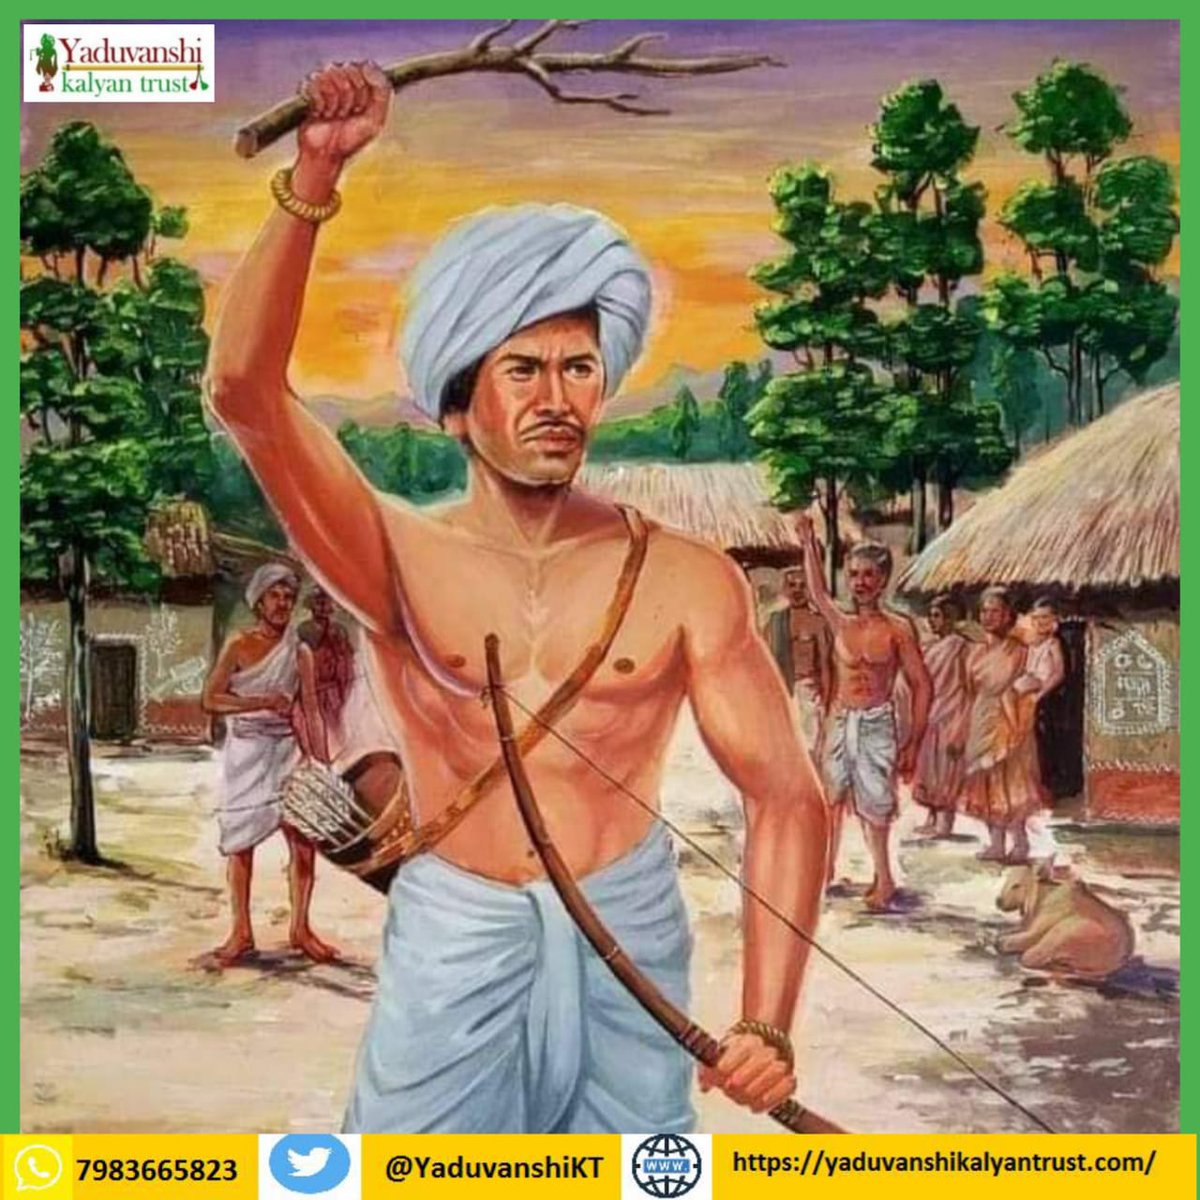 महान क्रांतिकारी, जननायक और आदिवासियों की आवाज उठाने वाले श्री बिरसा मुंडा जी को उनके जन्म तिथि पर शत-शत नमन💐 #BirsaMundaJayanti